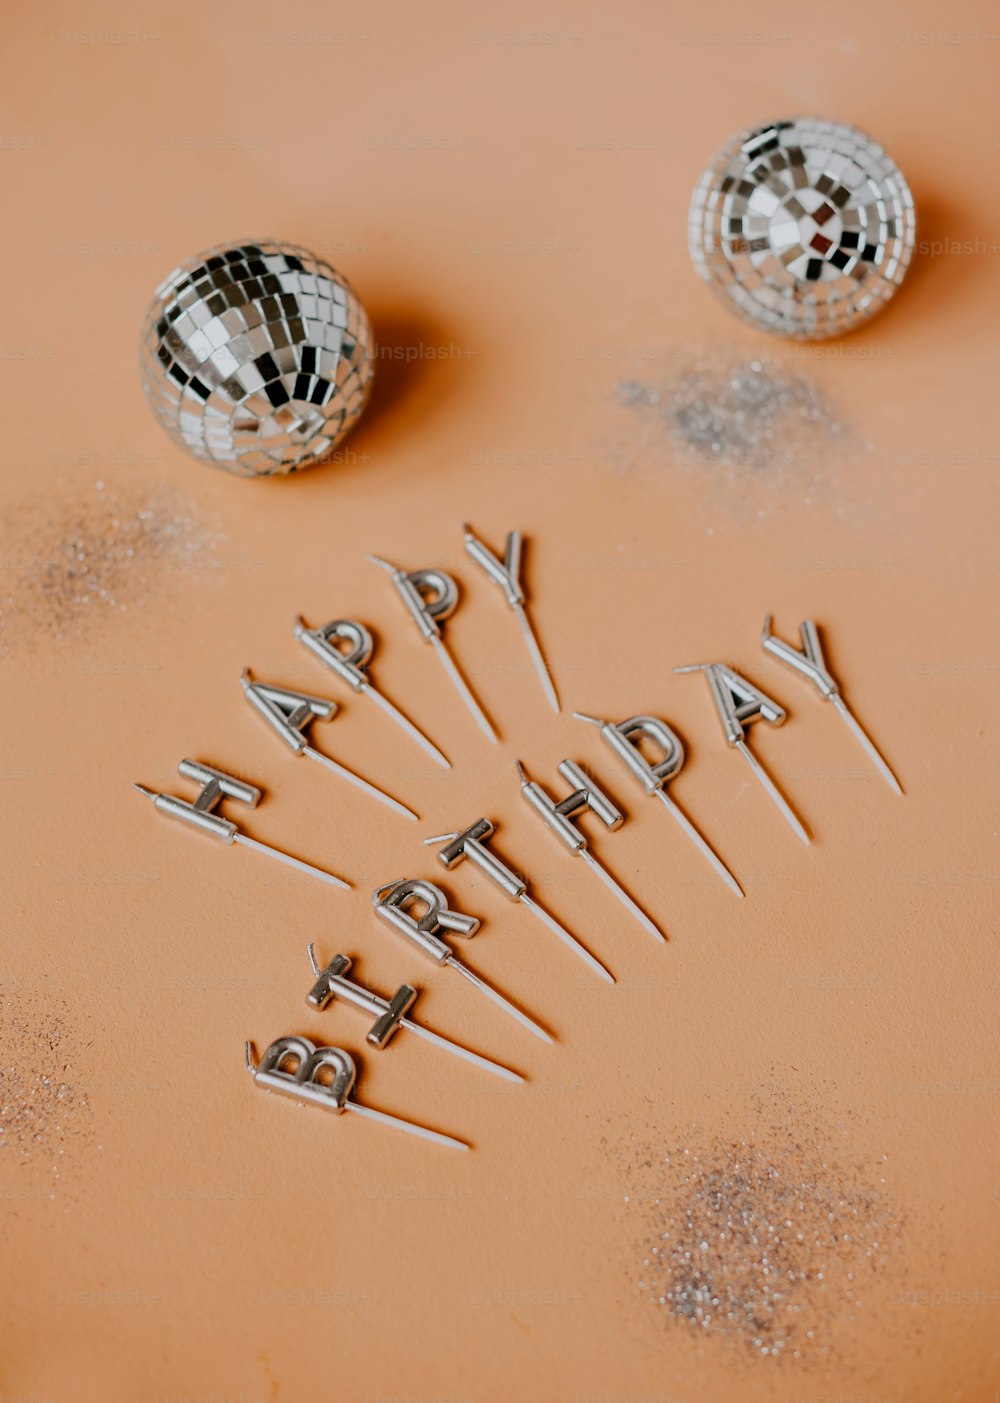 디스코 볼과 생일 축하 글이 적힌 생일 케이크